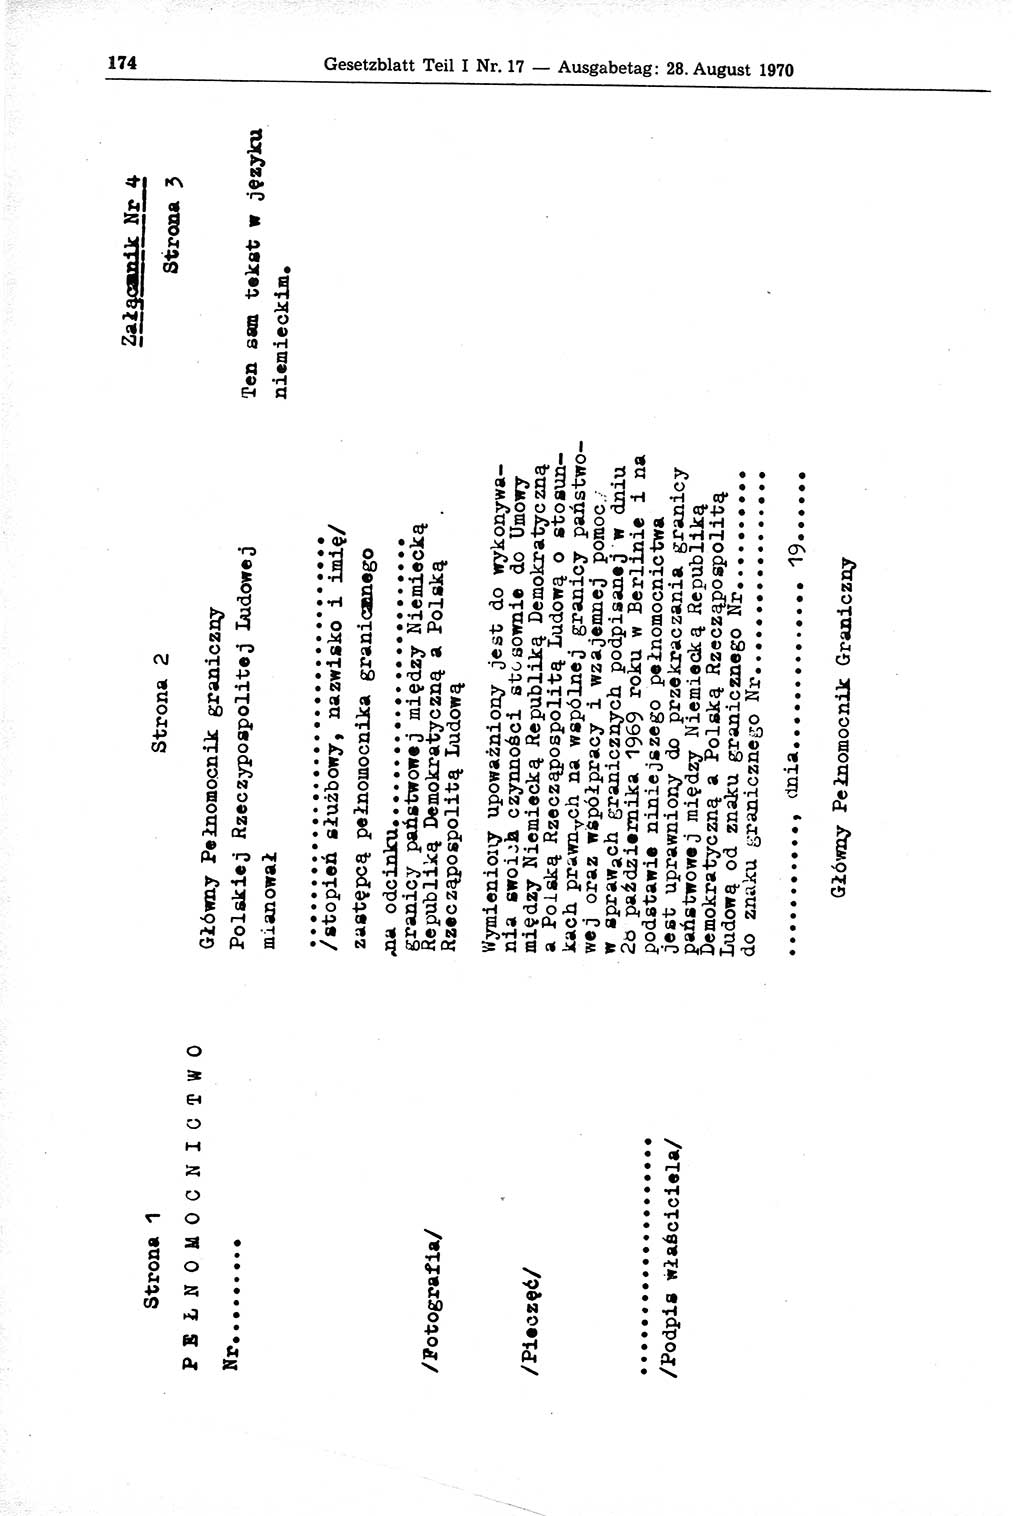 Gesetzblatt (GBl.) der Deutschen Demokratischen Republik (DDR) Teil Ⅰ 1970, Seite 174 (GBl. DDR Ⅰ 1970, S. 174)